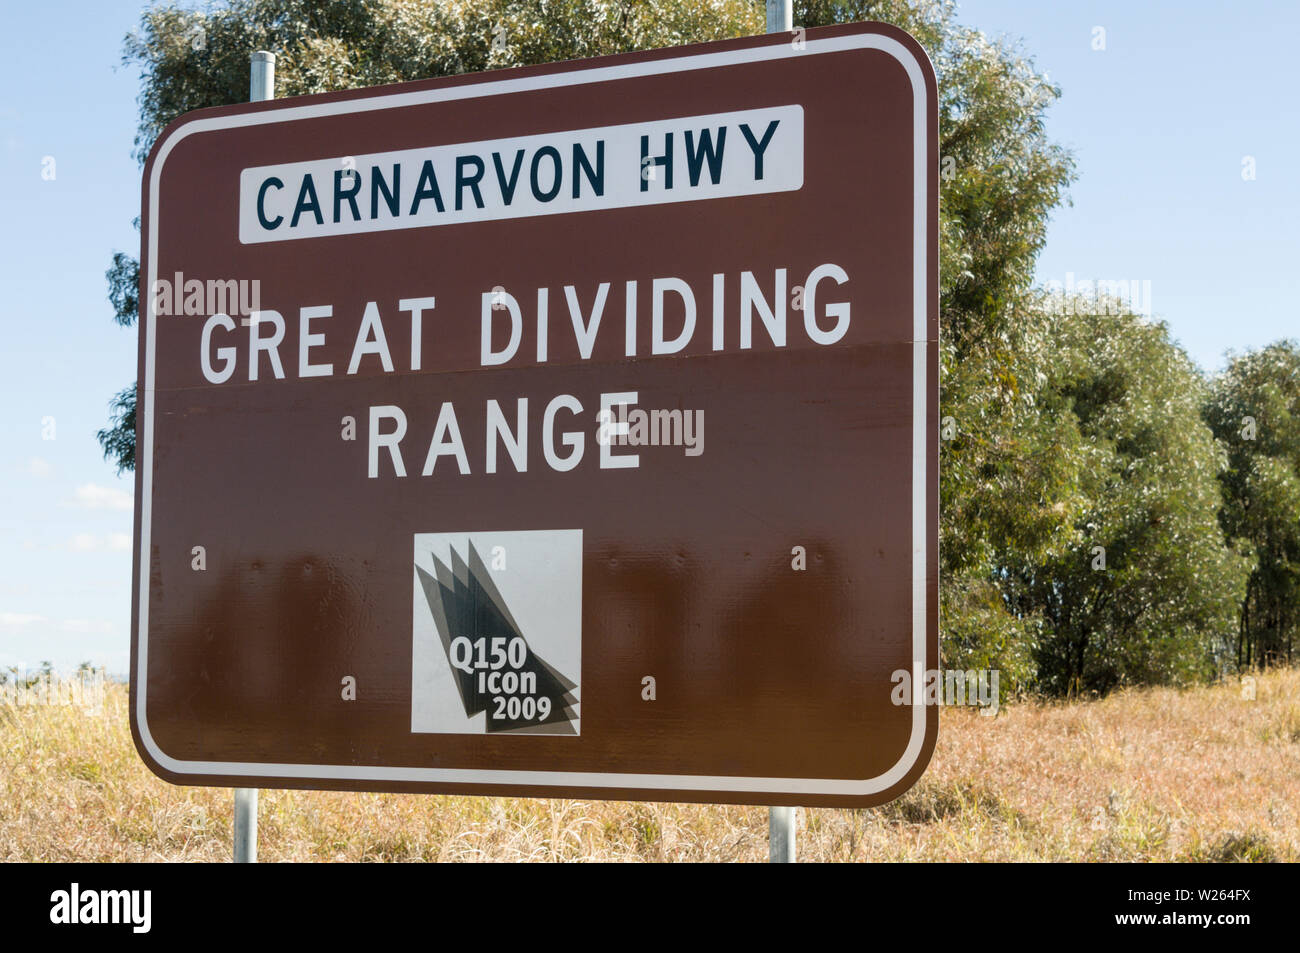 Ein Straßenschild der Great Dividing Range auf dem Carnarvon Highway, einem Staatsautobahn in Queensland, Australien. Stockfoto